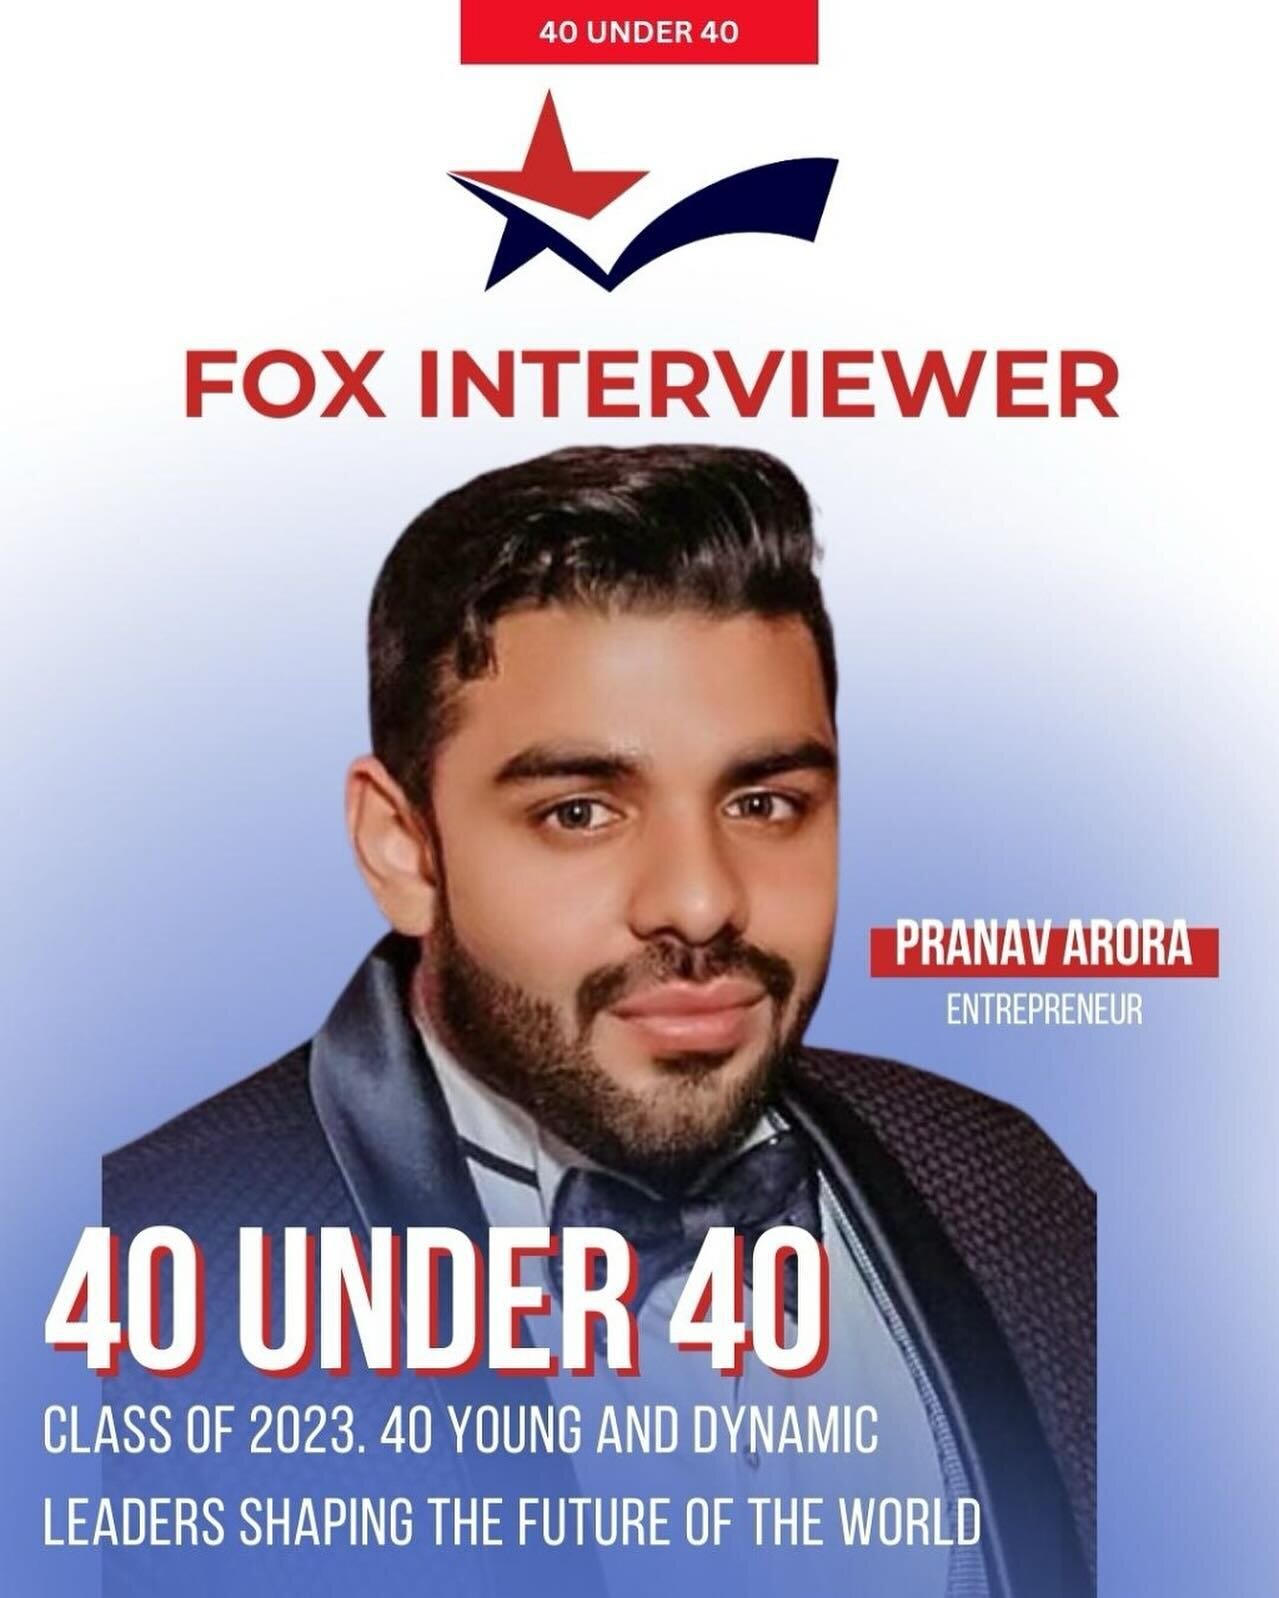 Our client Pranav Arora featured on Fox Interviewer 40 under 40!